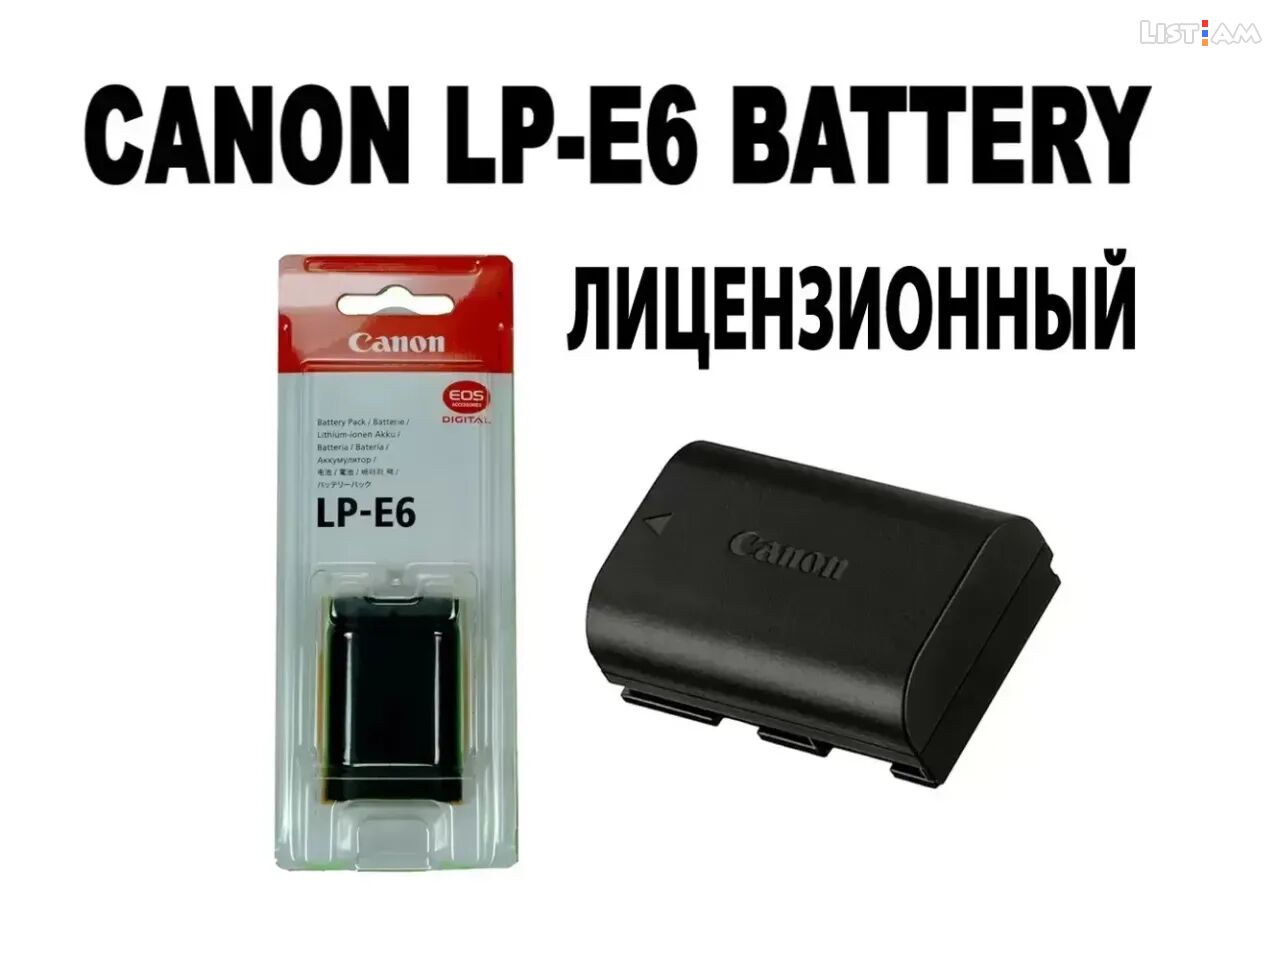 LP-E6 Battery For